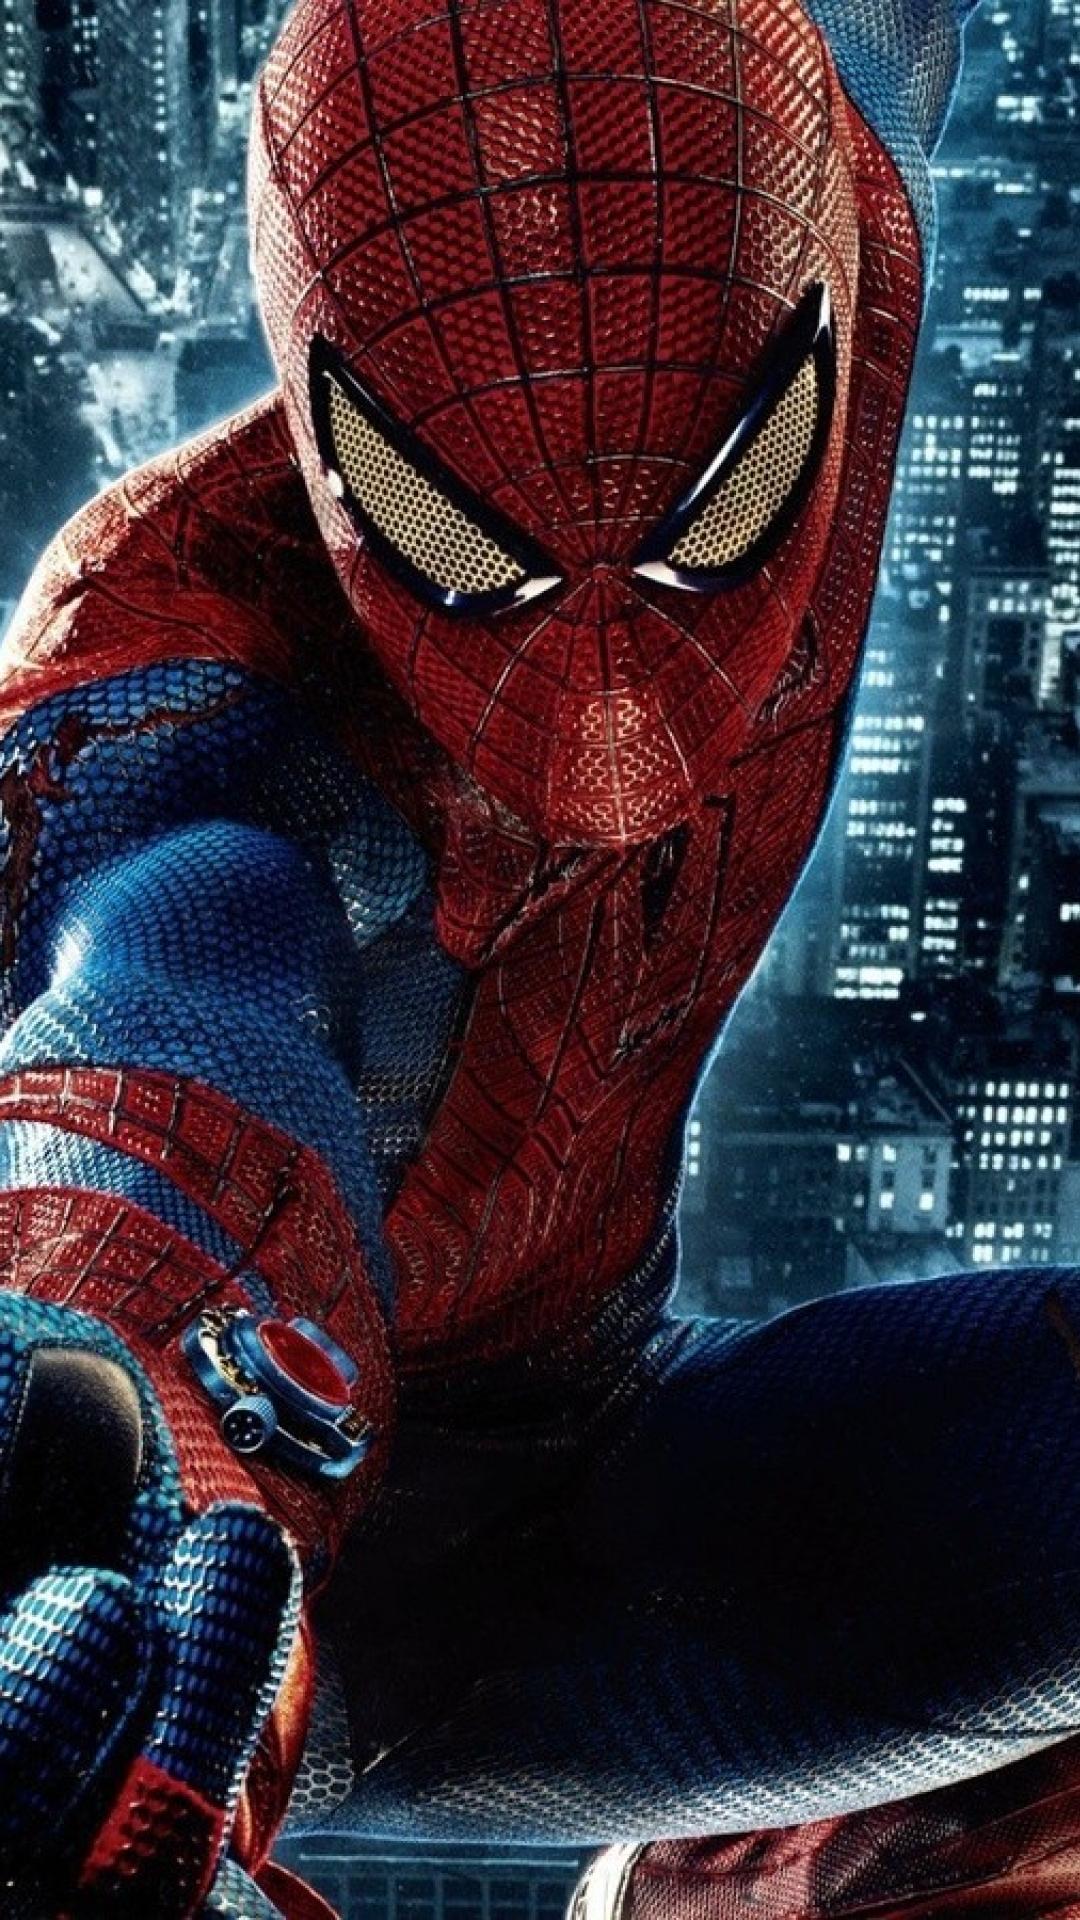 Comics spider-man superhero wallpaper | (9982)